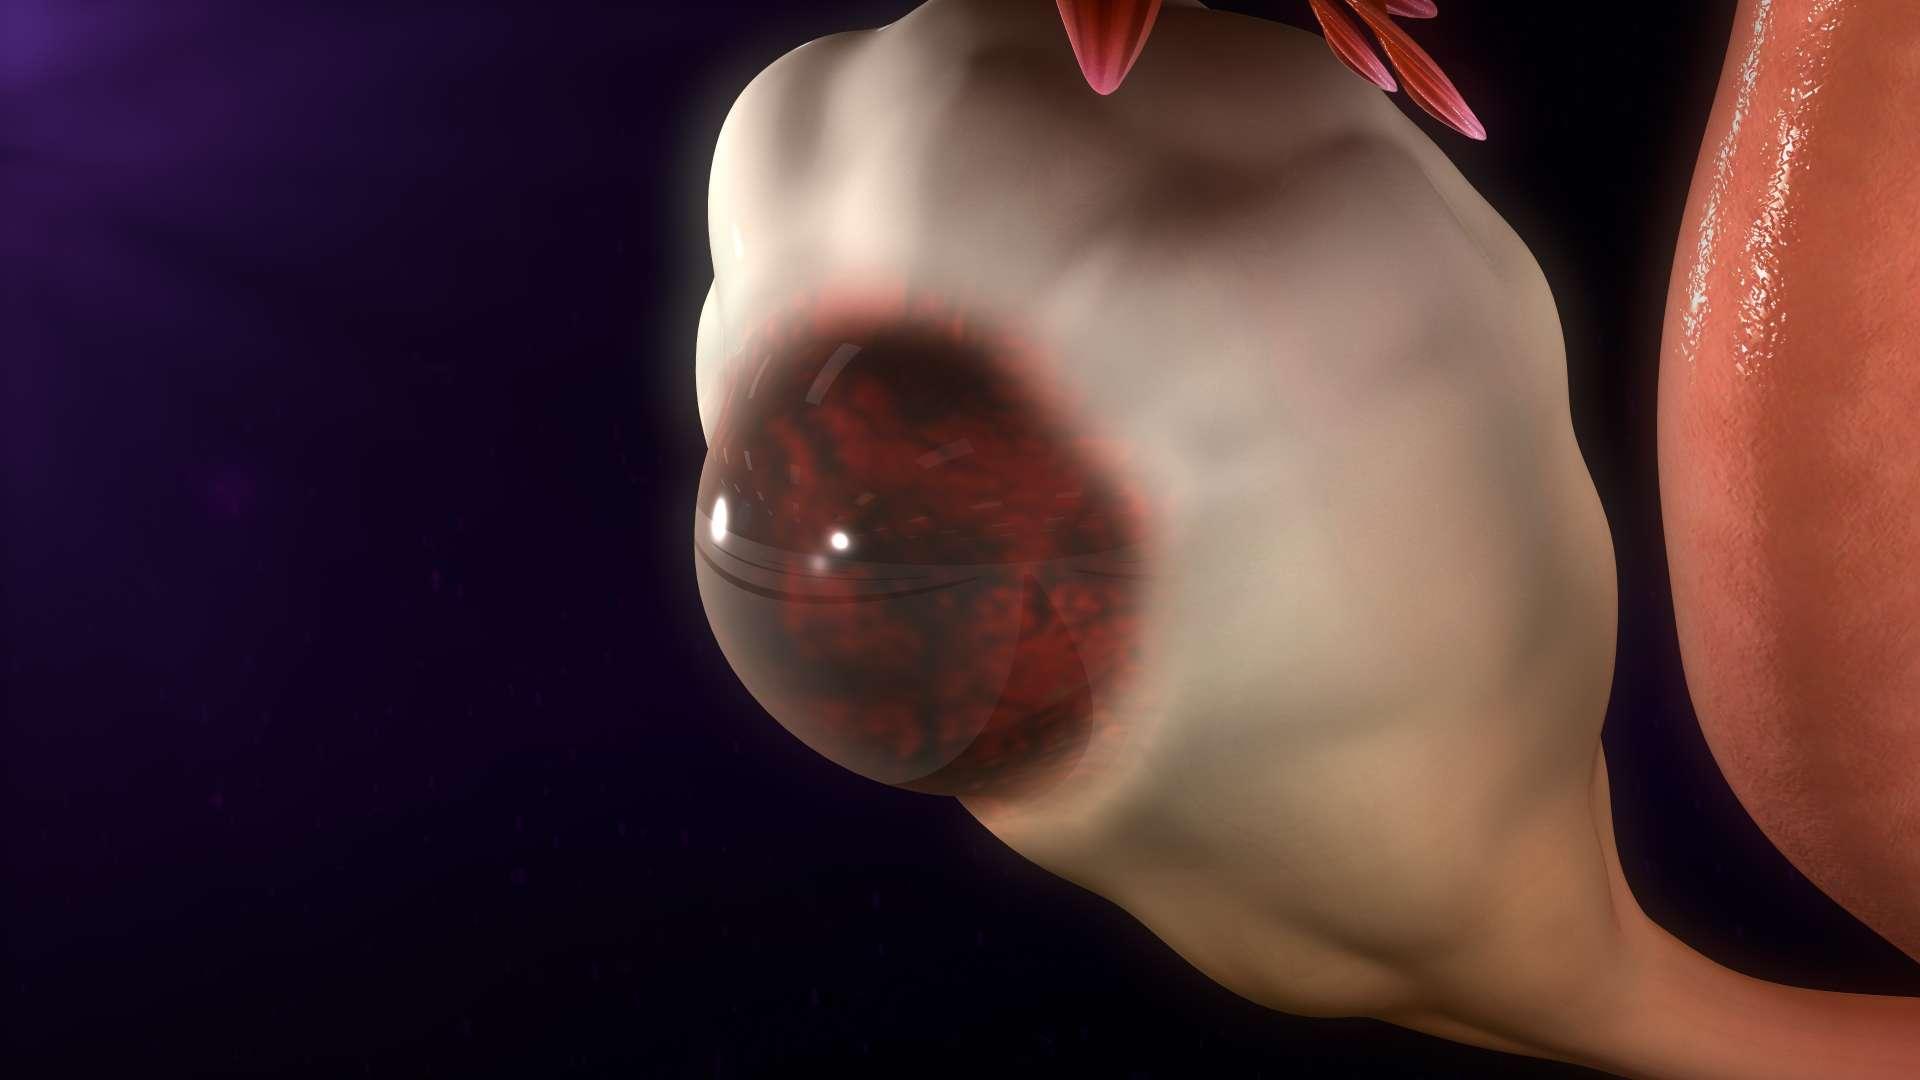 Eine Störung, bei der Gewebe, das normalerweise die Gebärmutter auskleidet, außerhalb der Gebärmutter wächst.